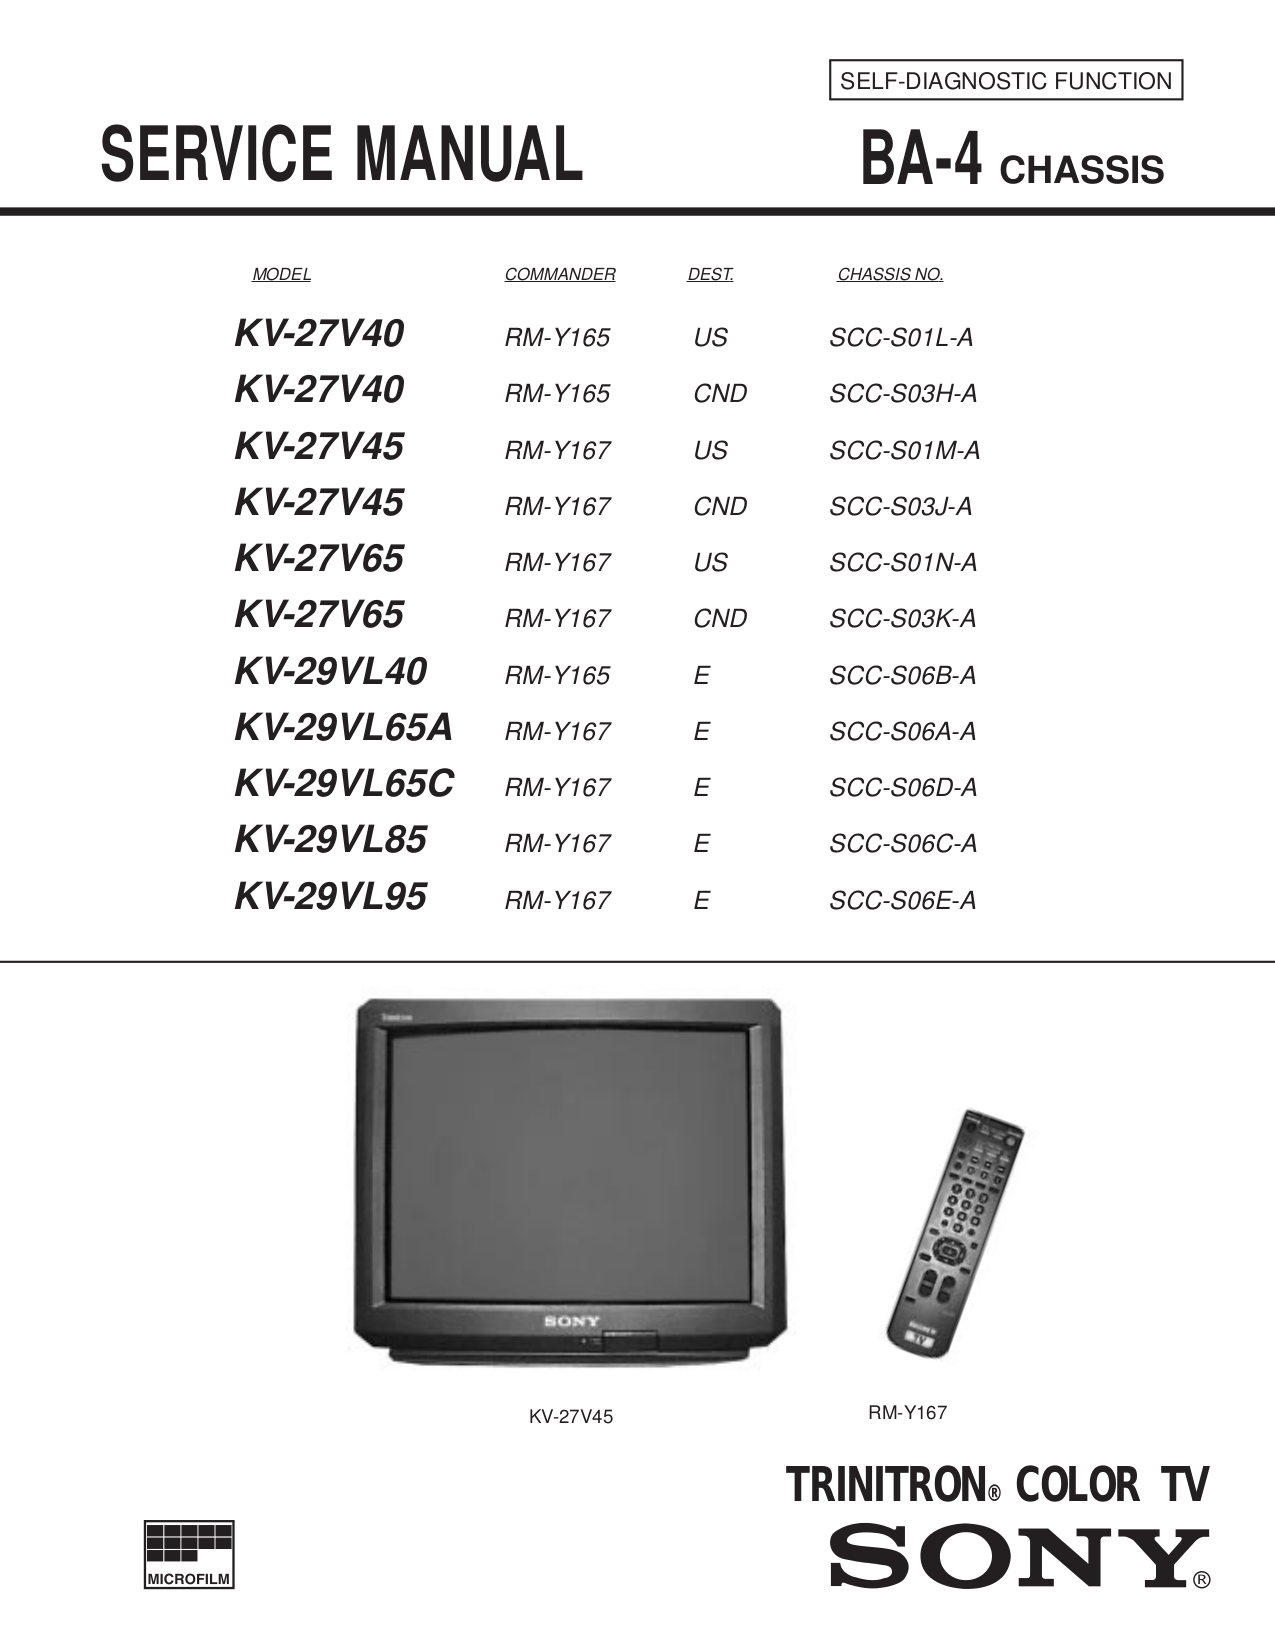 Download free pdf for Sony KV-27V40 TV manual